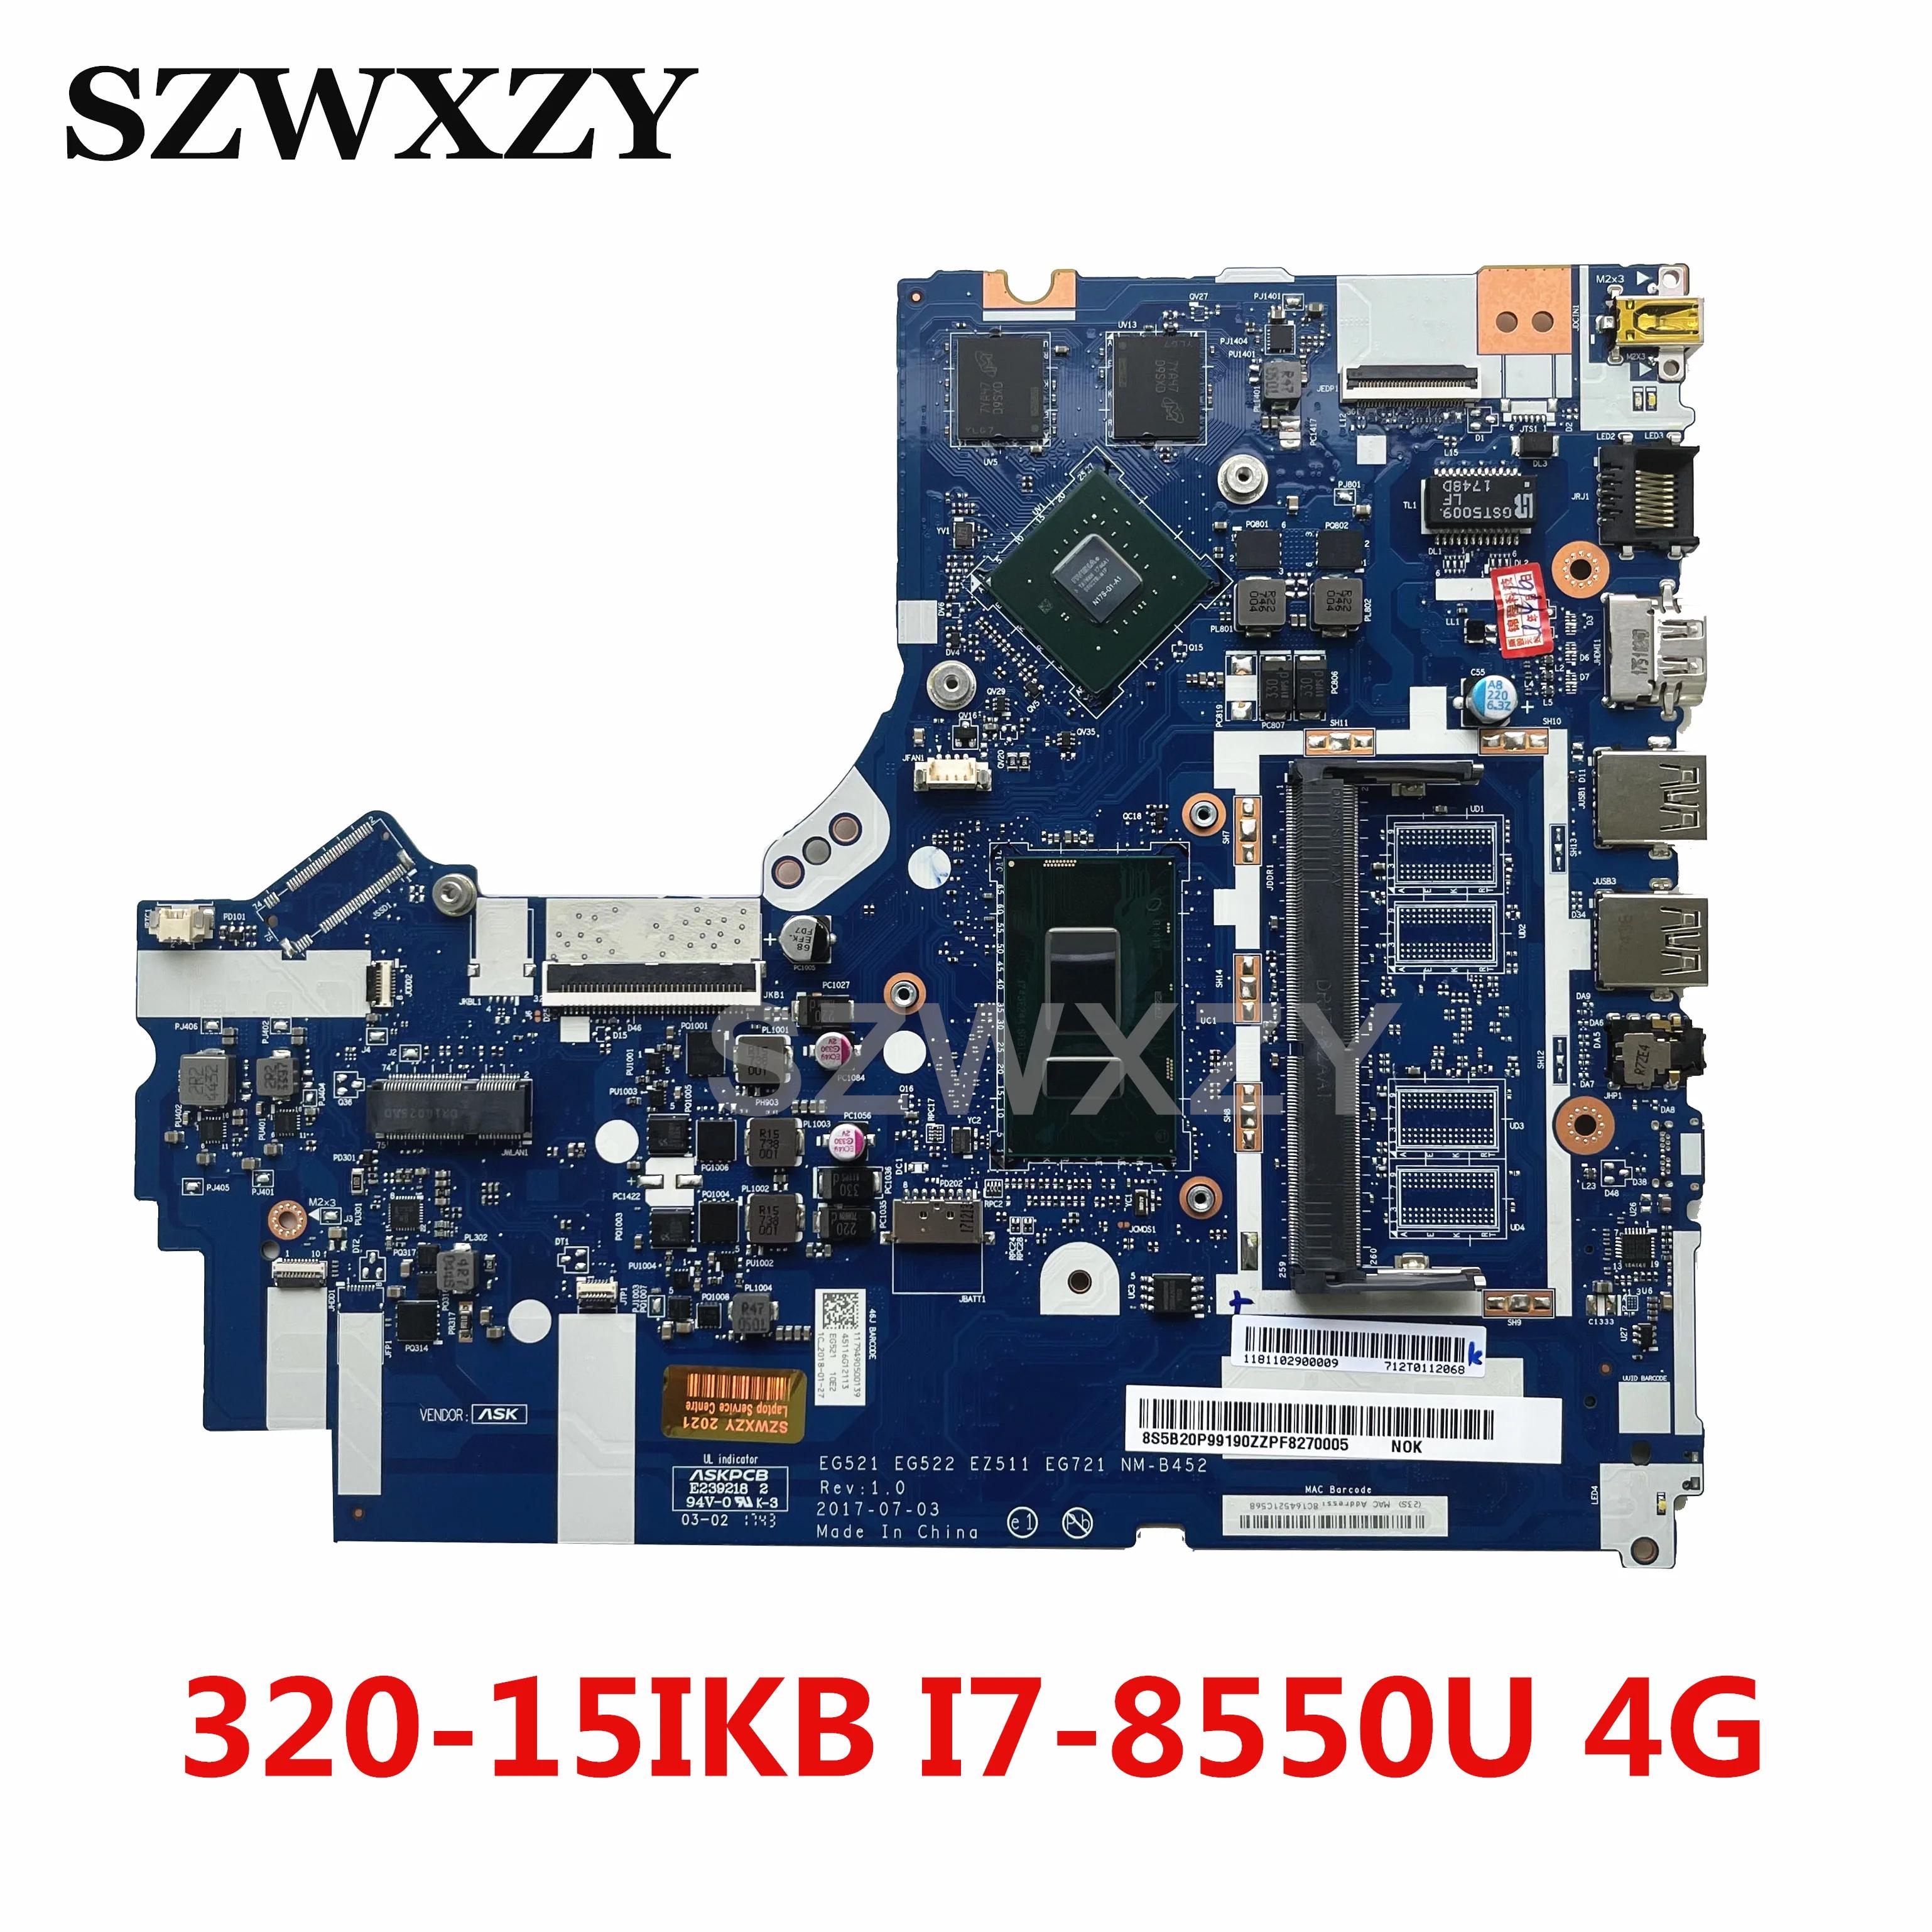  Ideapad Ʈ   NM-B452, I7-8550U CPU MX150 4GB GPU , 320-15IKB 320-17IKB, 5B20P99190